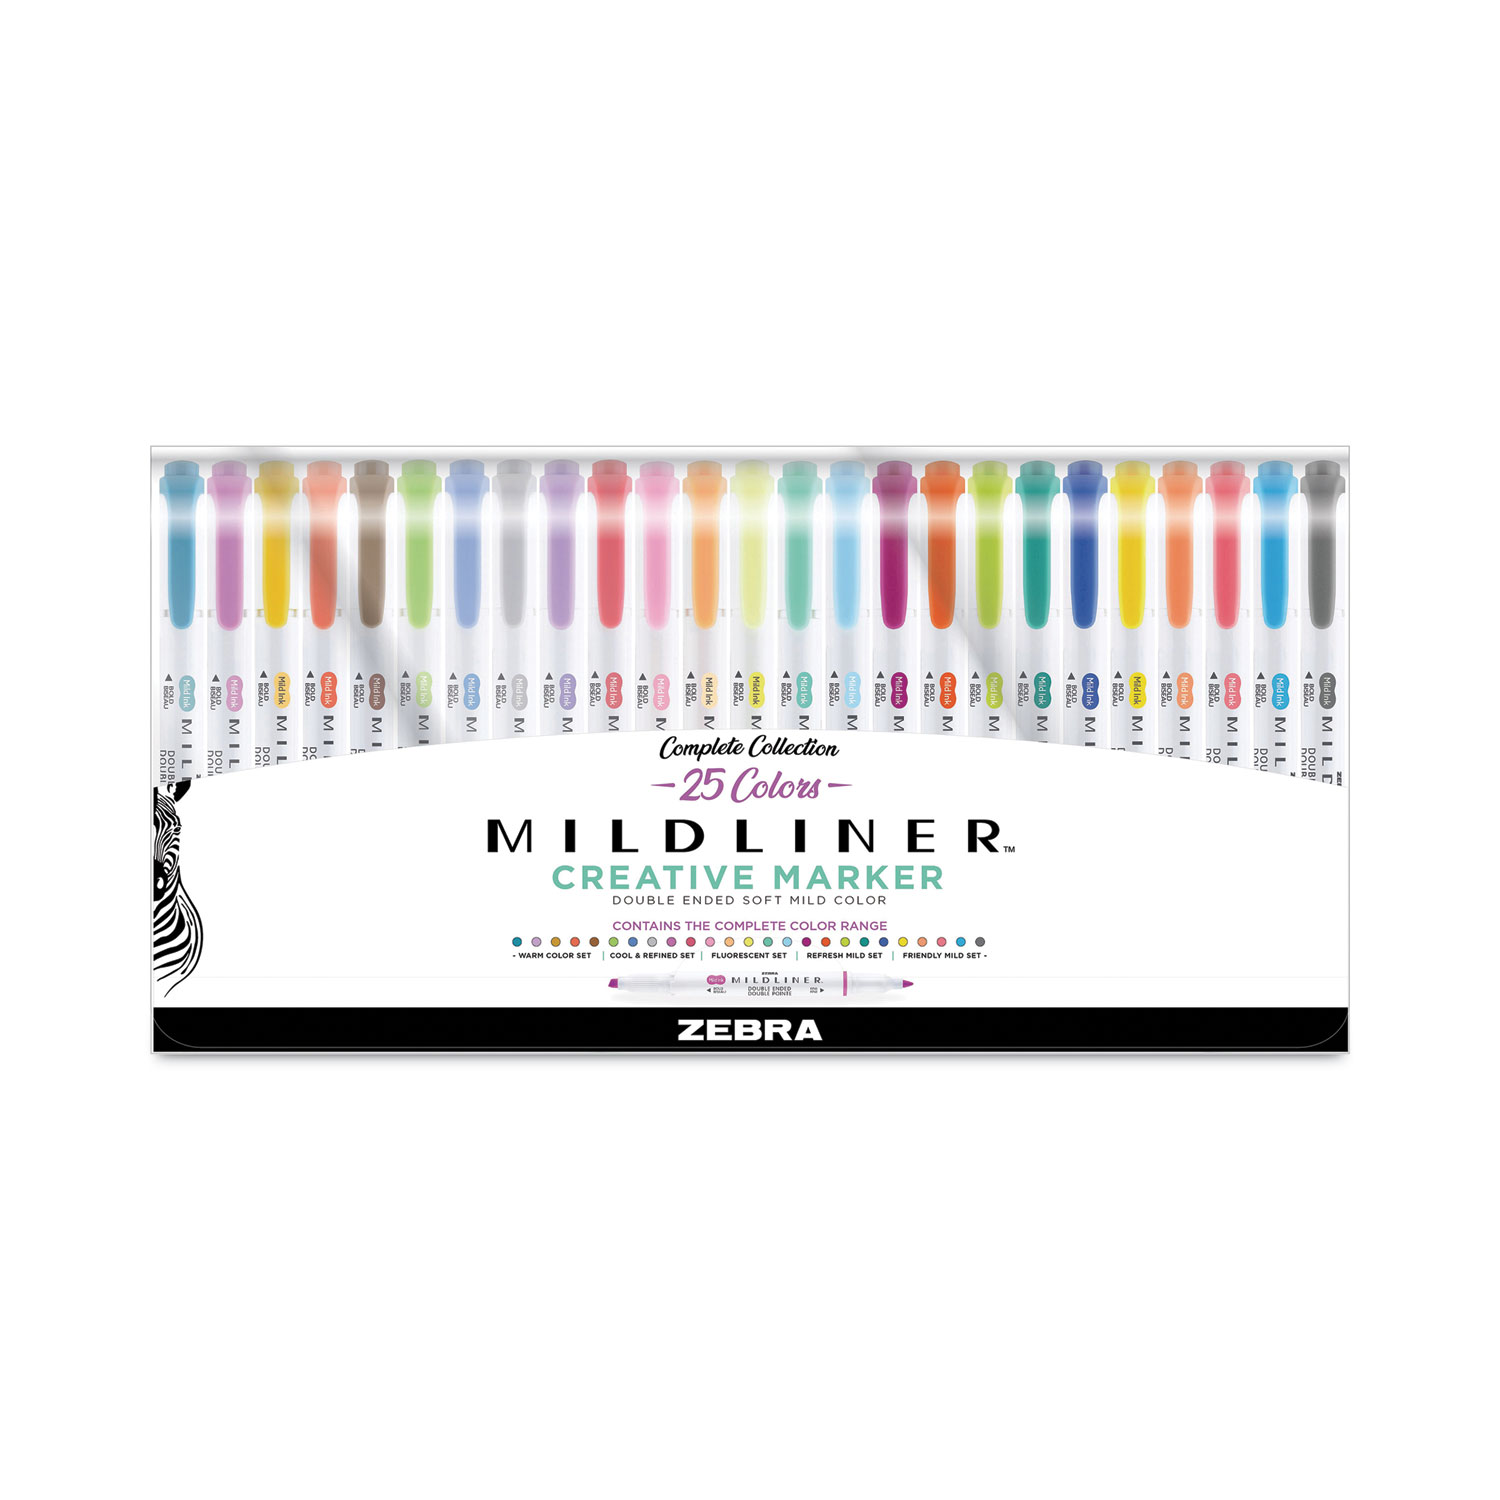  Zebra Pen Mildliner Double Ended Highlighter Set, Broad and  Fine Point Tips, Assorted Ink Colors, 15-Pack : Everything Else